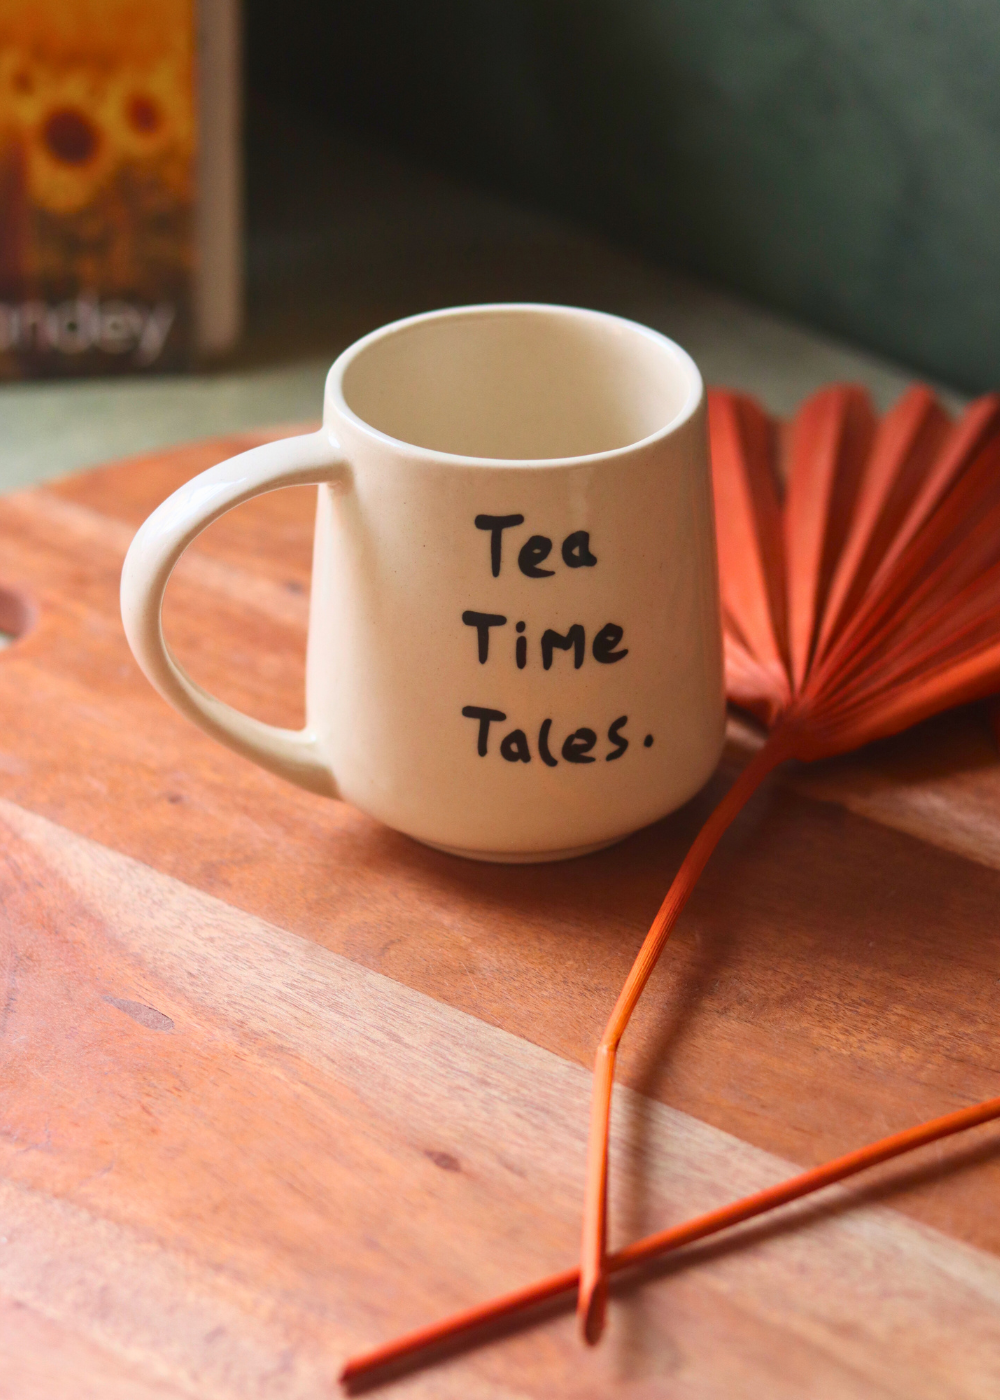 Tea Times Tales Mug